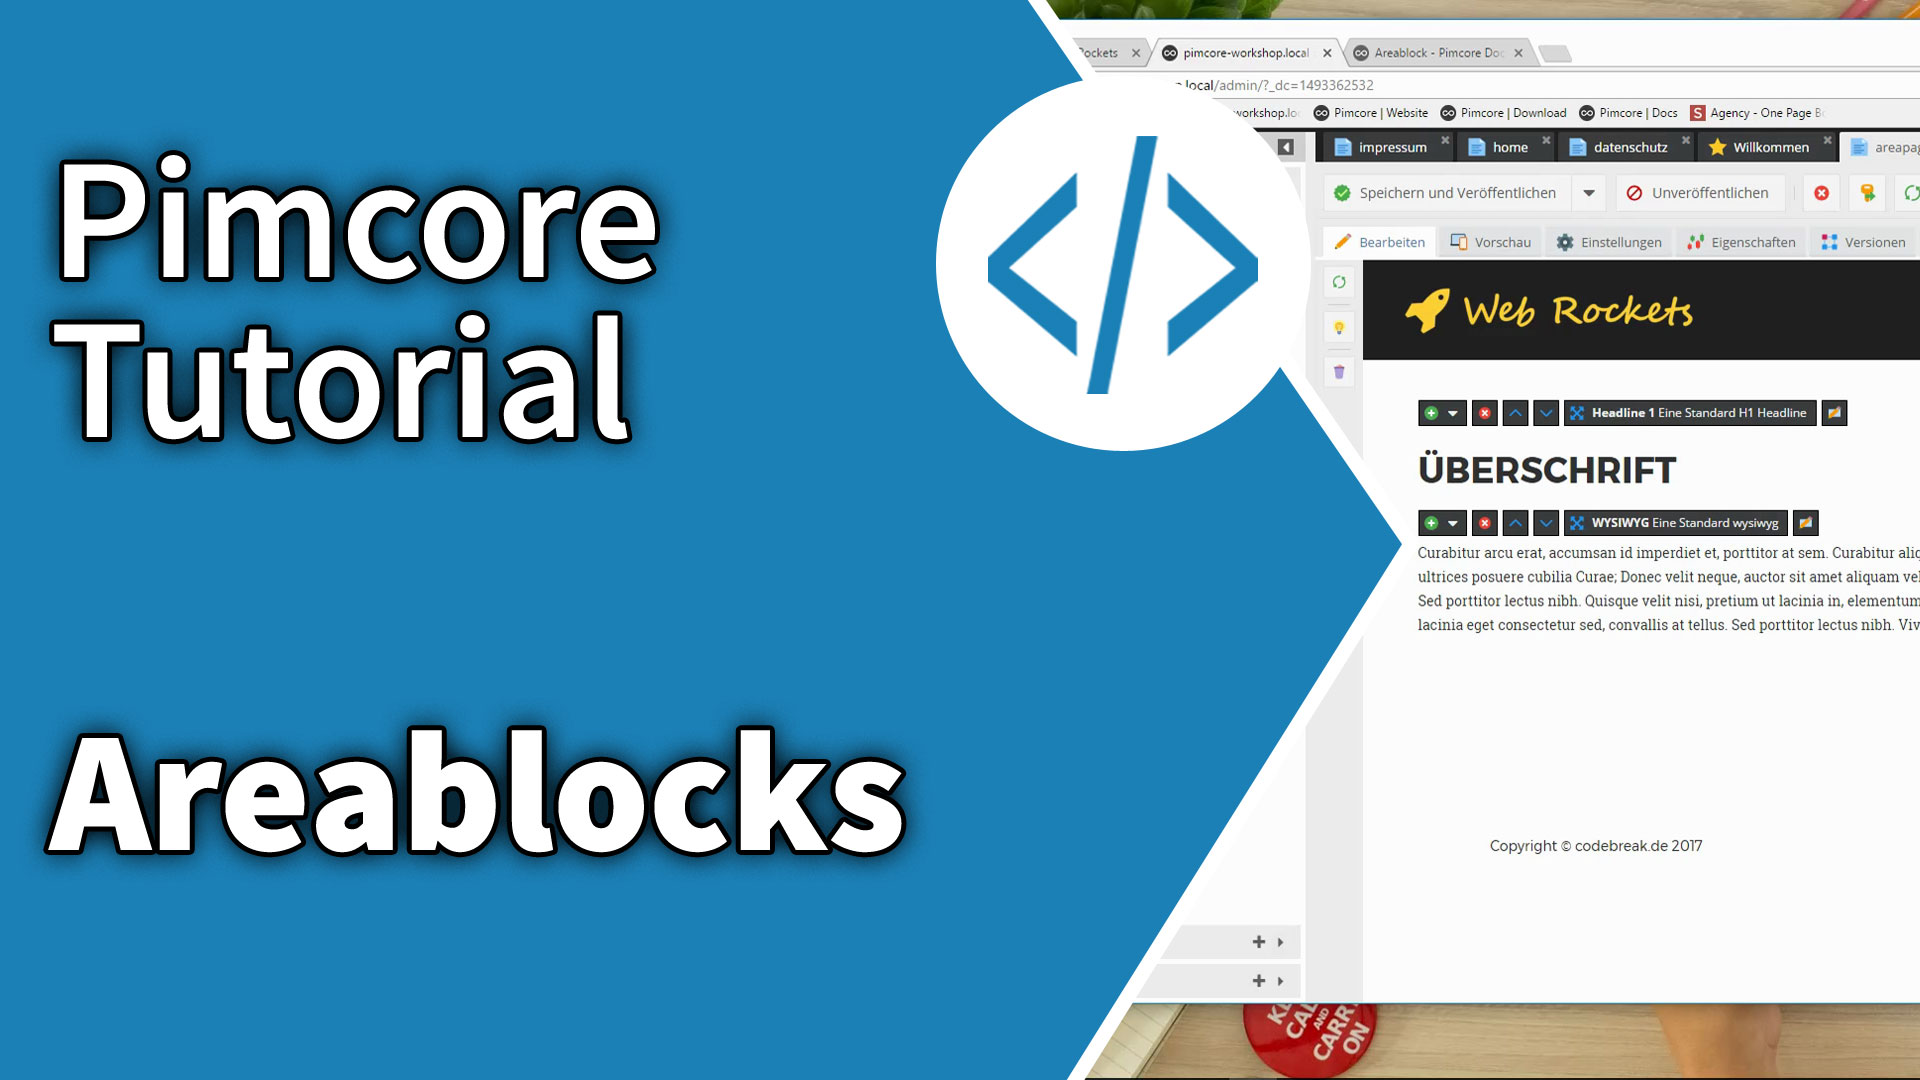 pimcore-tutorial-areablocks